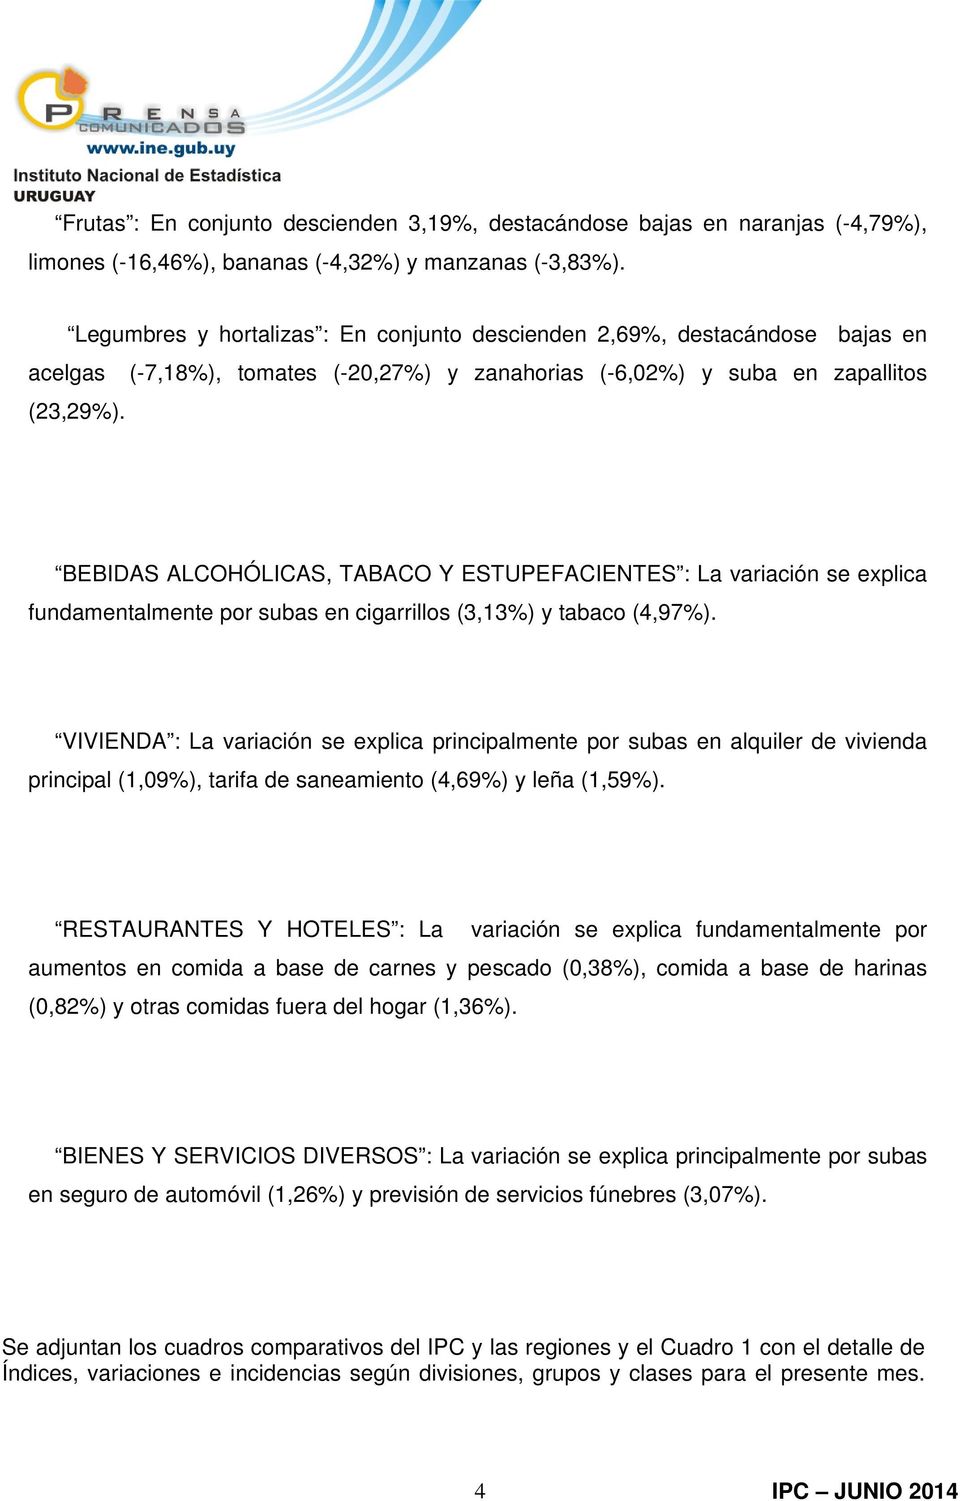 BEBIDAS ALCOHÓLICAS, TABACO Y ESTUPEFACIENTES : La variación se explica fundamentalmente por subas en cigarrillos (3,13%) y tabaco (4,97%).